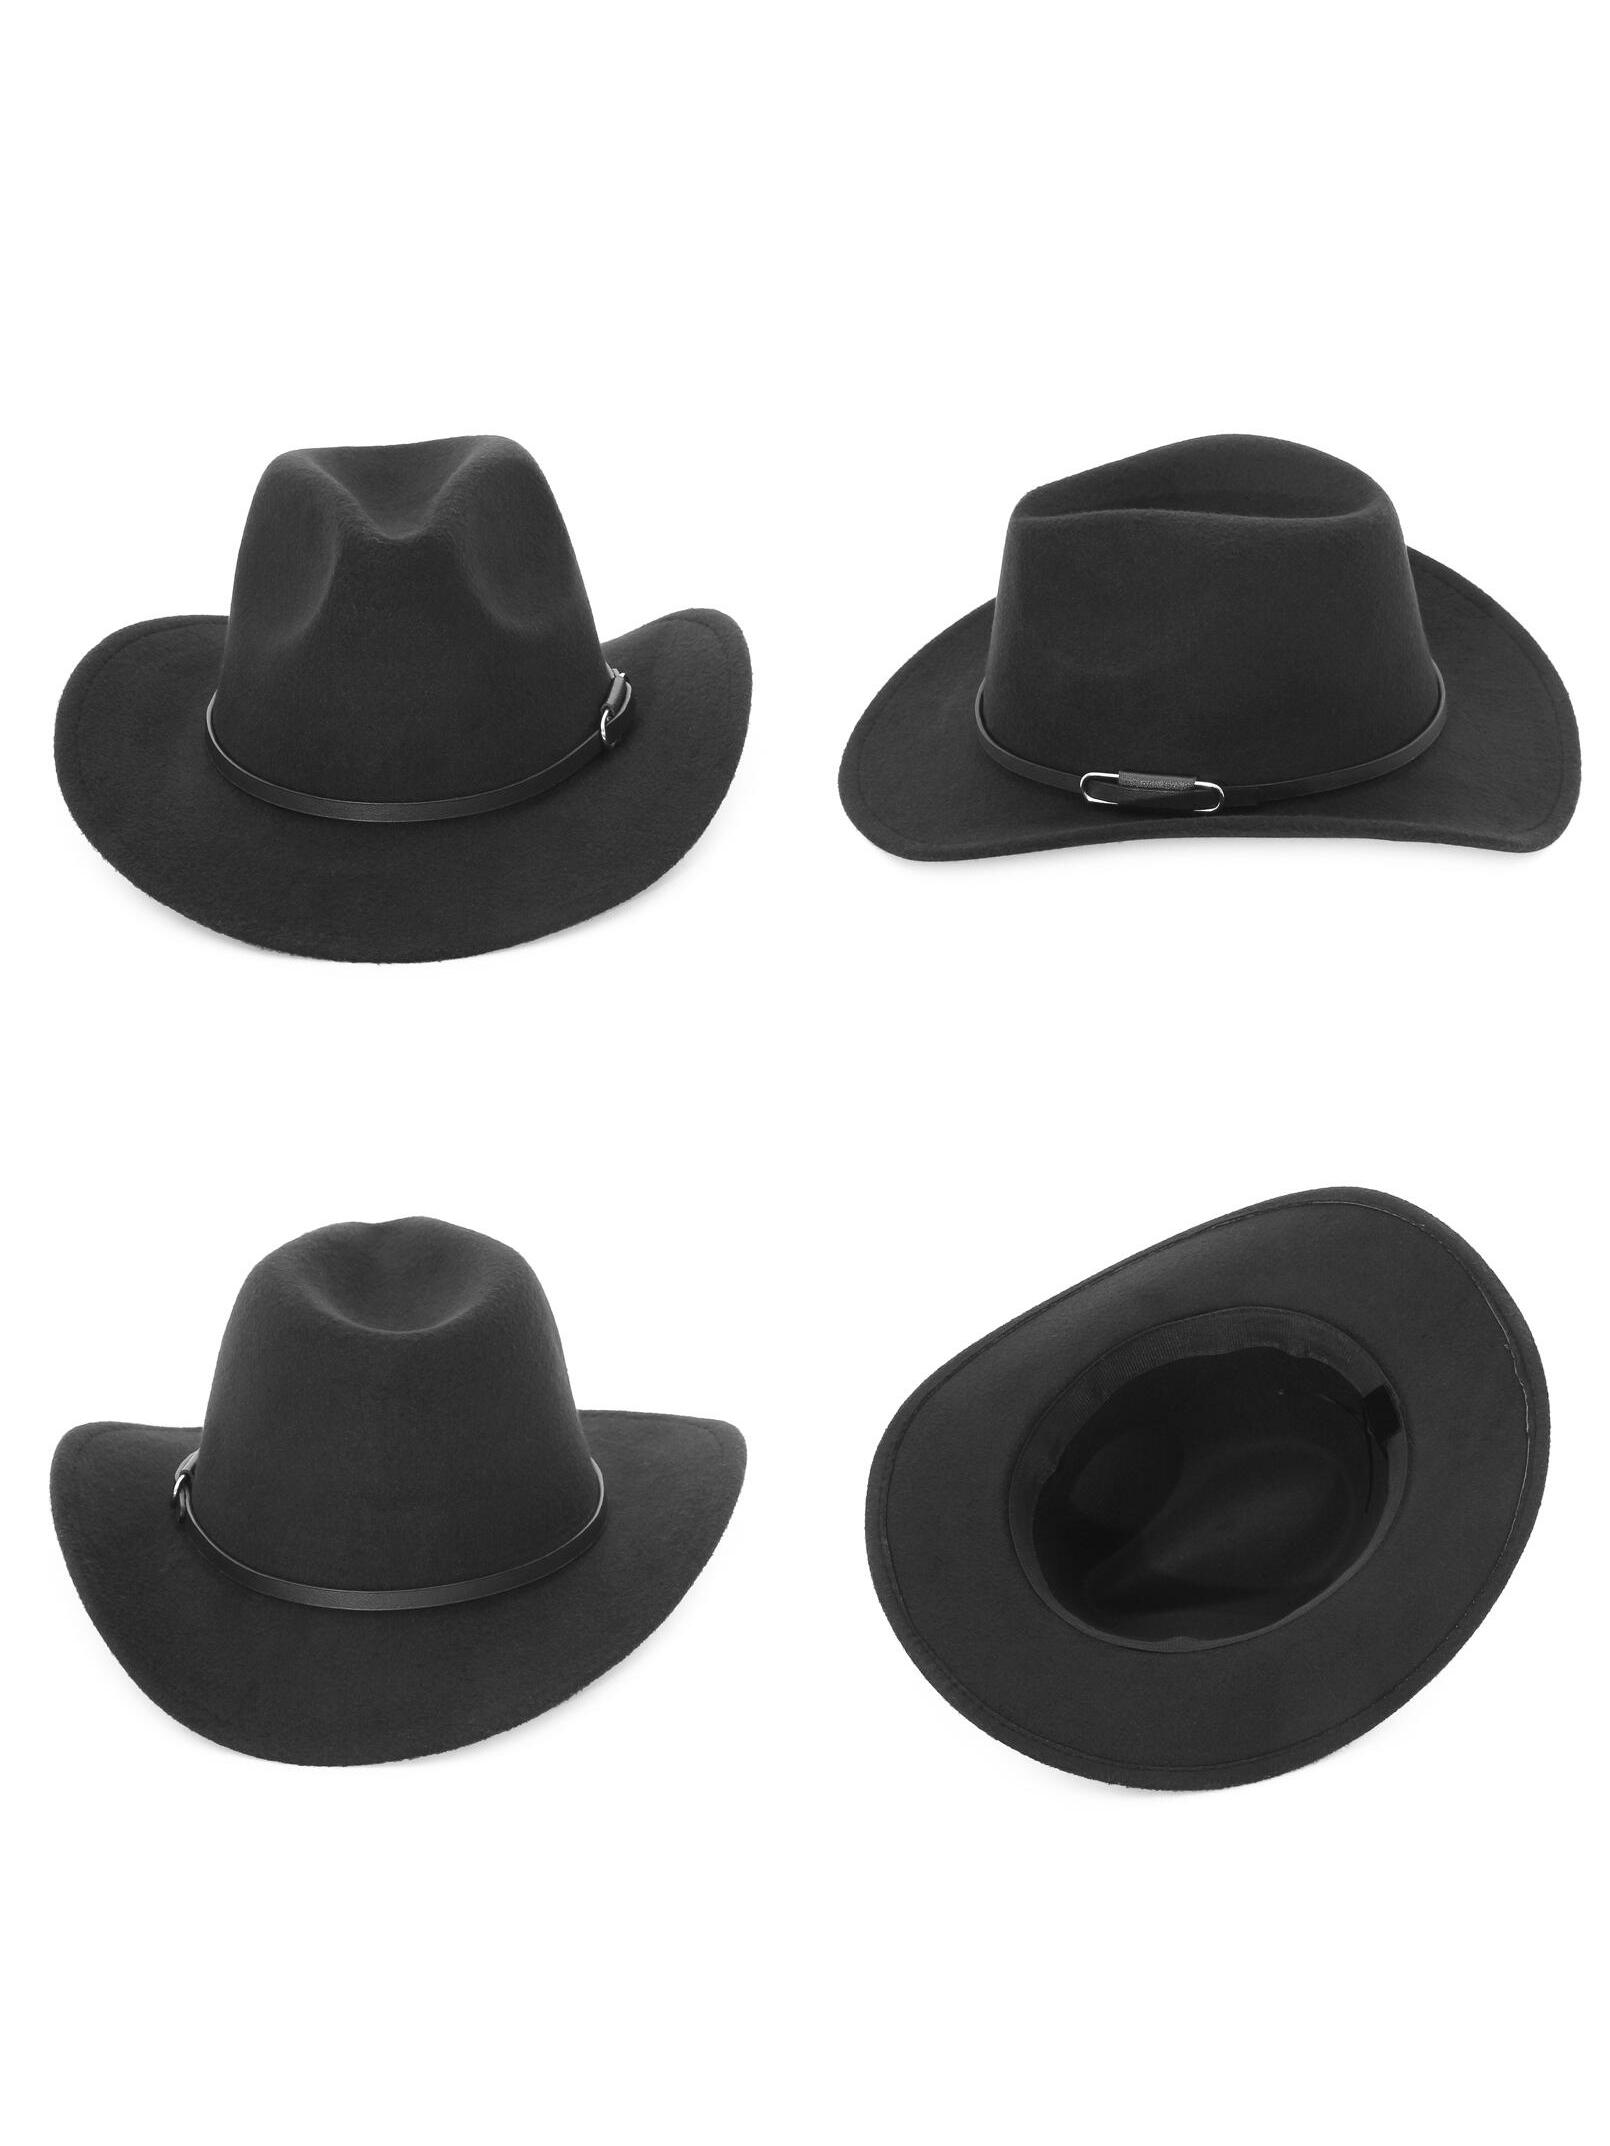 ковбойская шляпа брэнсон Ковбойская шляпа для мужчин и женщин, черный